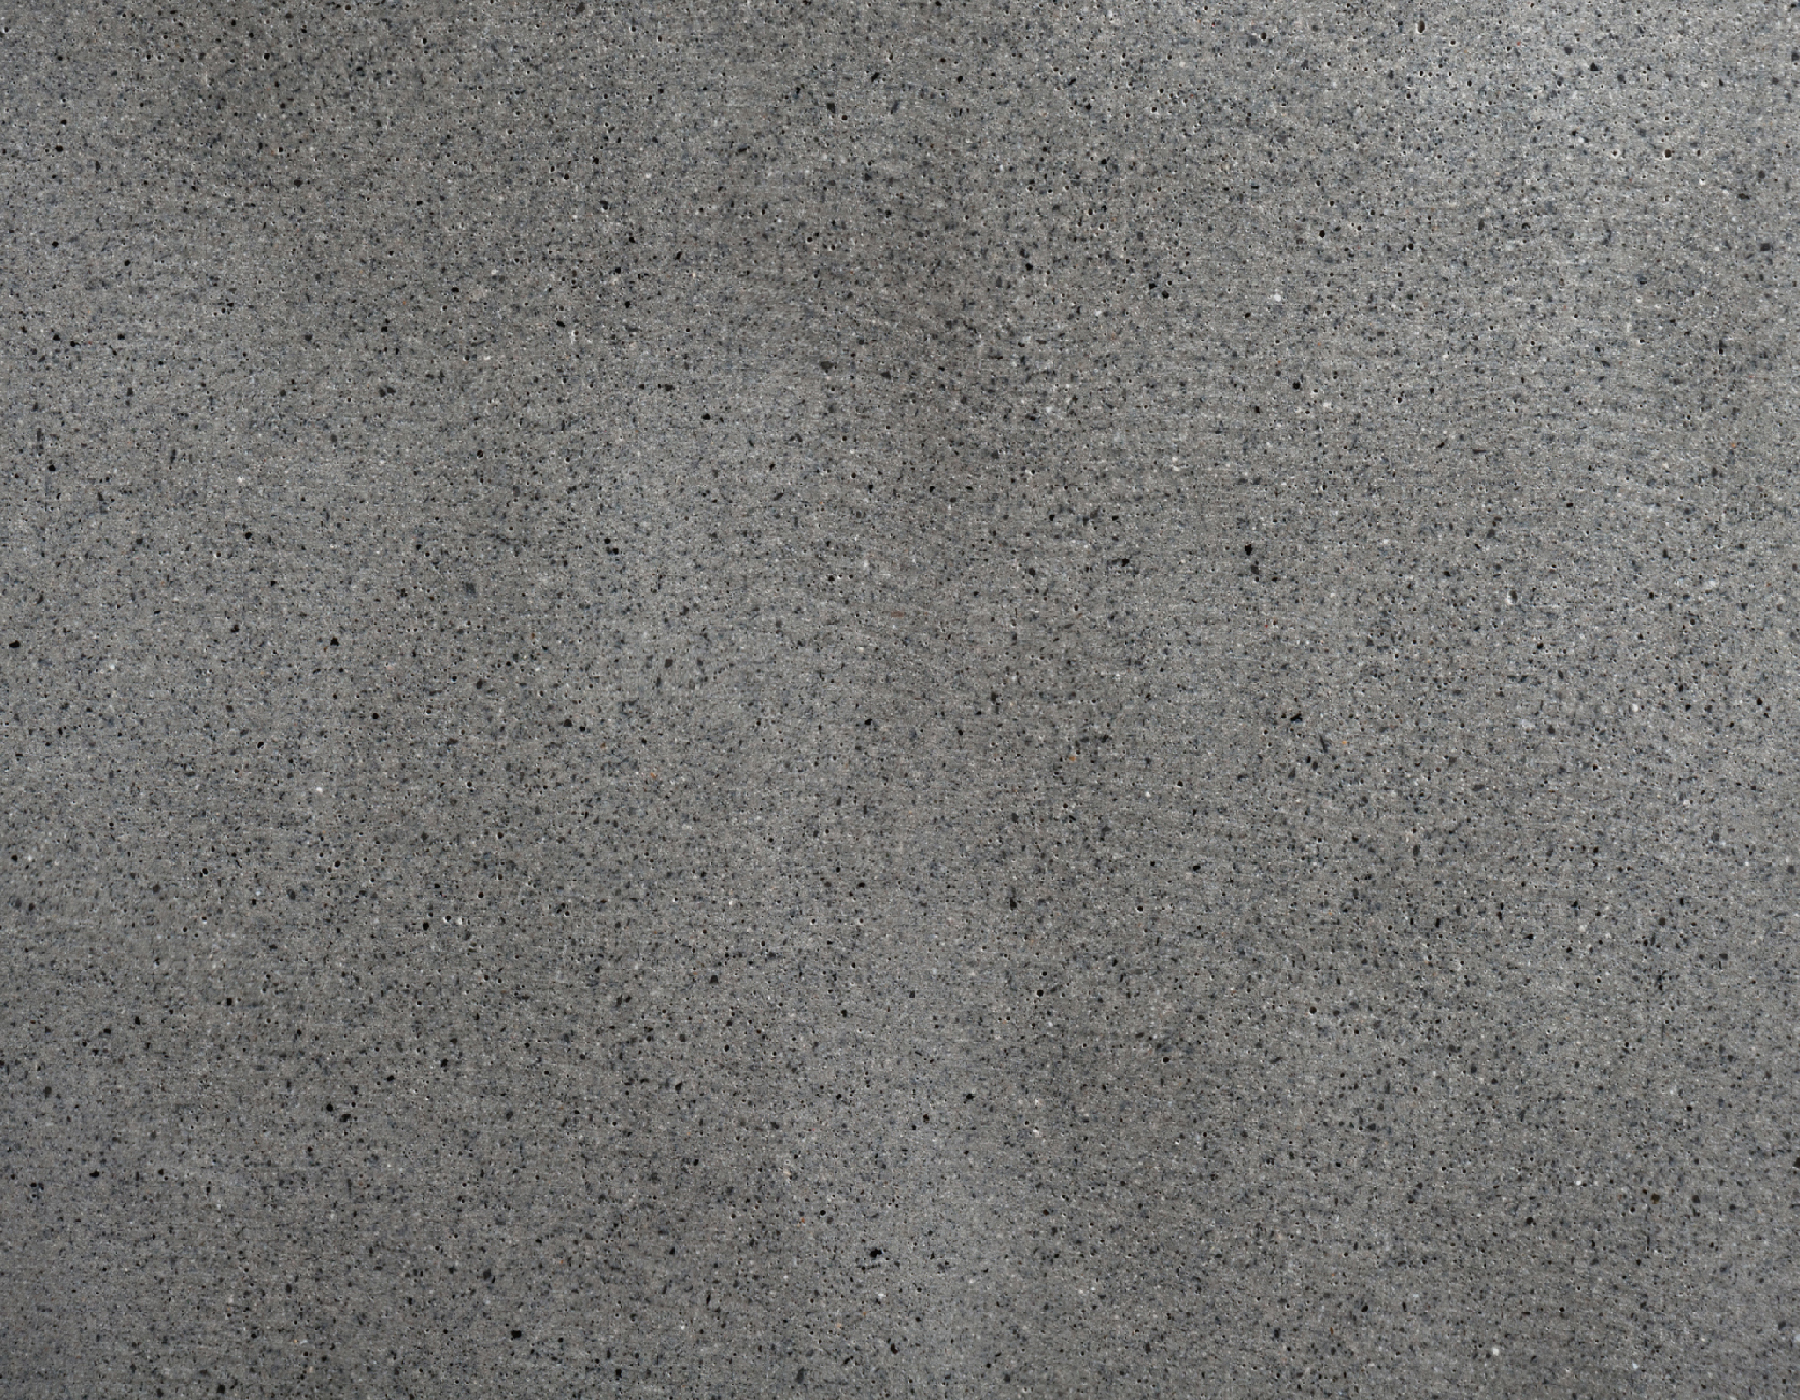 Кашпо TREEZ Effectory Beton Низкий прямоугольник Тёмно-серый бетон д-40, ш-20, в-22 см 41.3319-02-019-GR-040